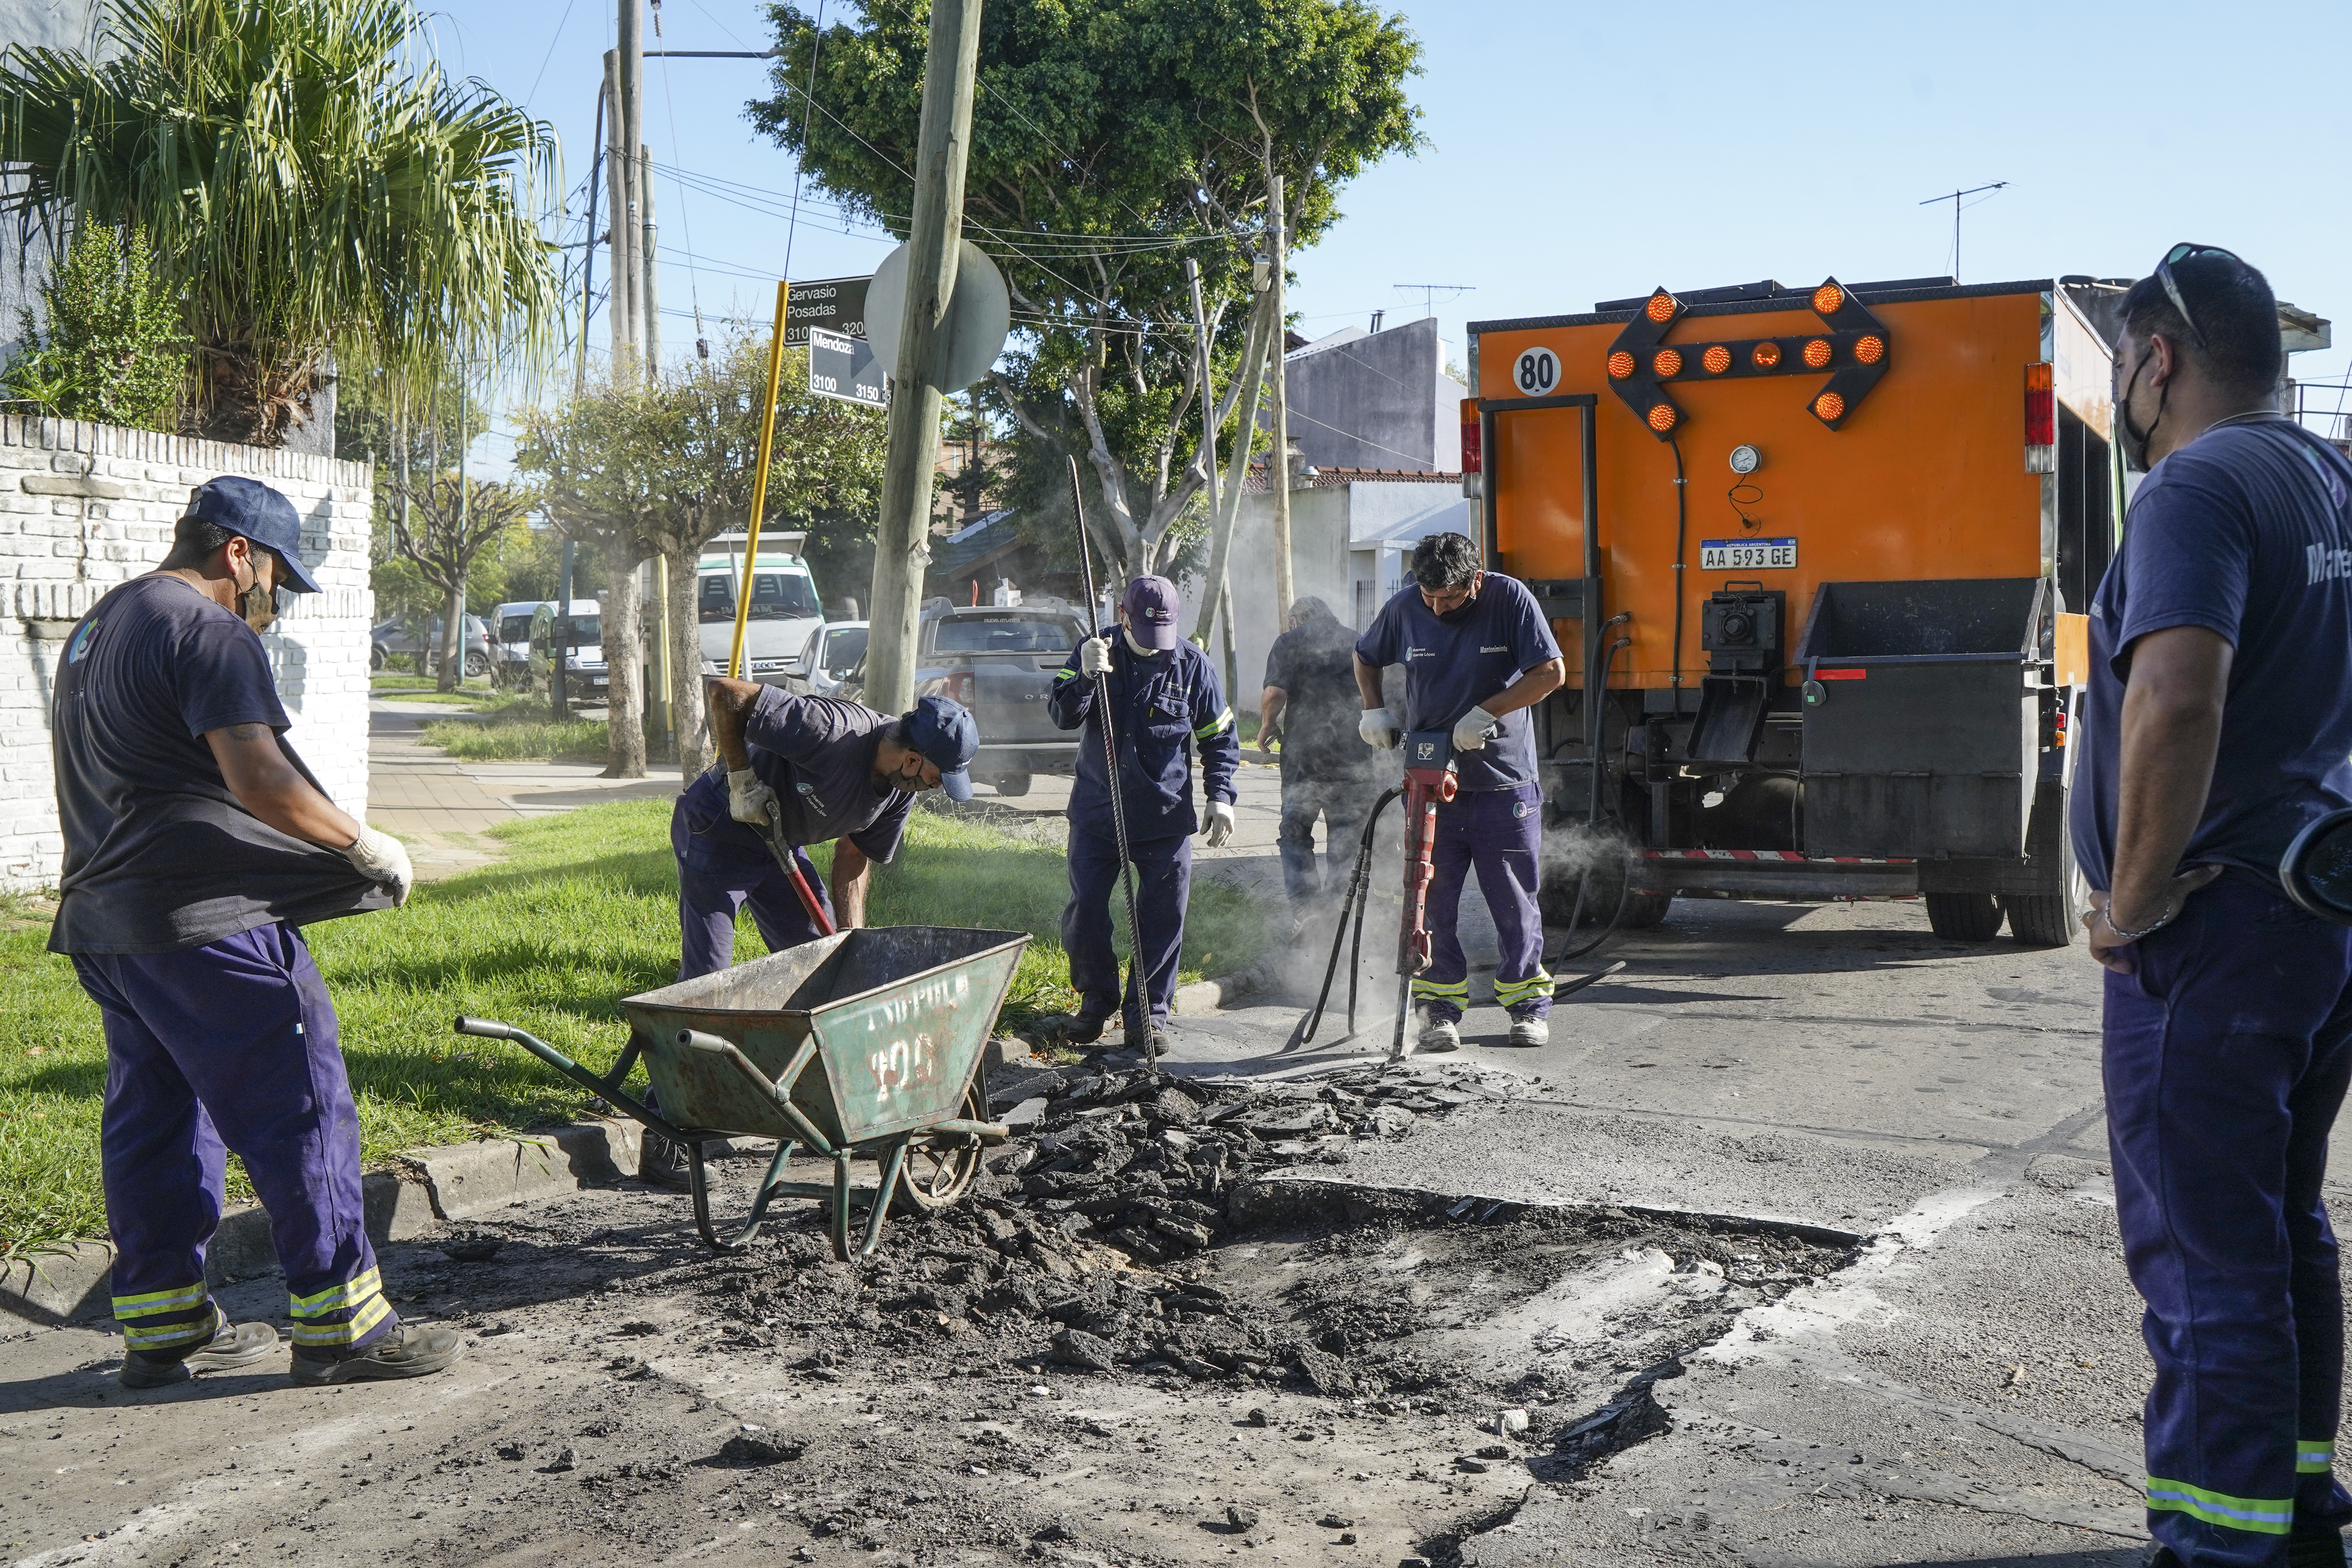  Avanzan los trabajos de bacheo y asfalto en Carapachay